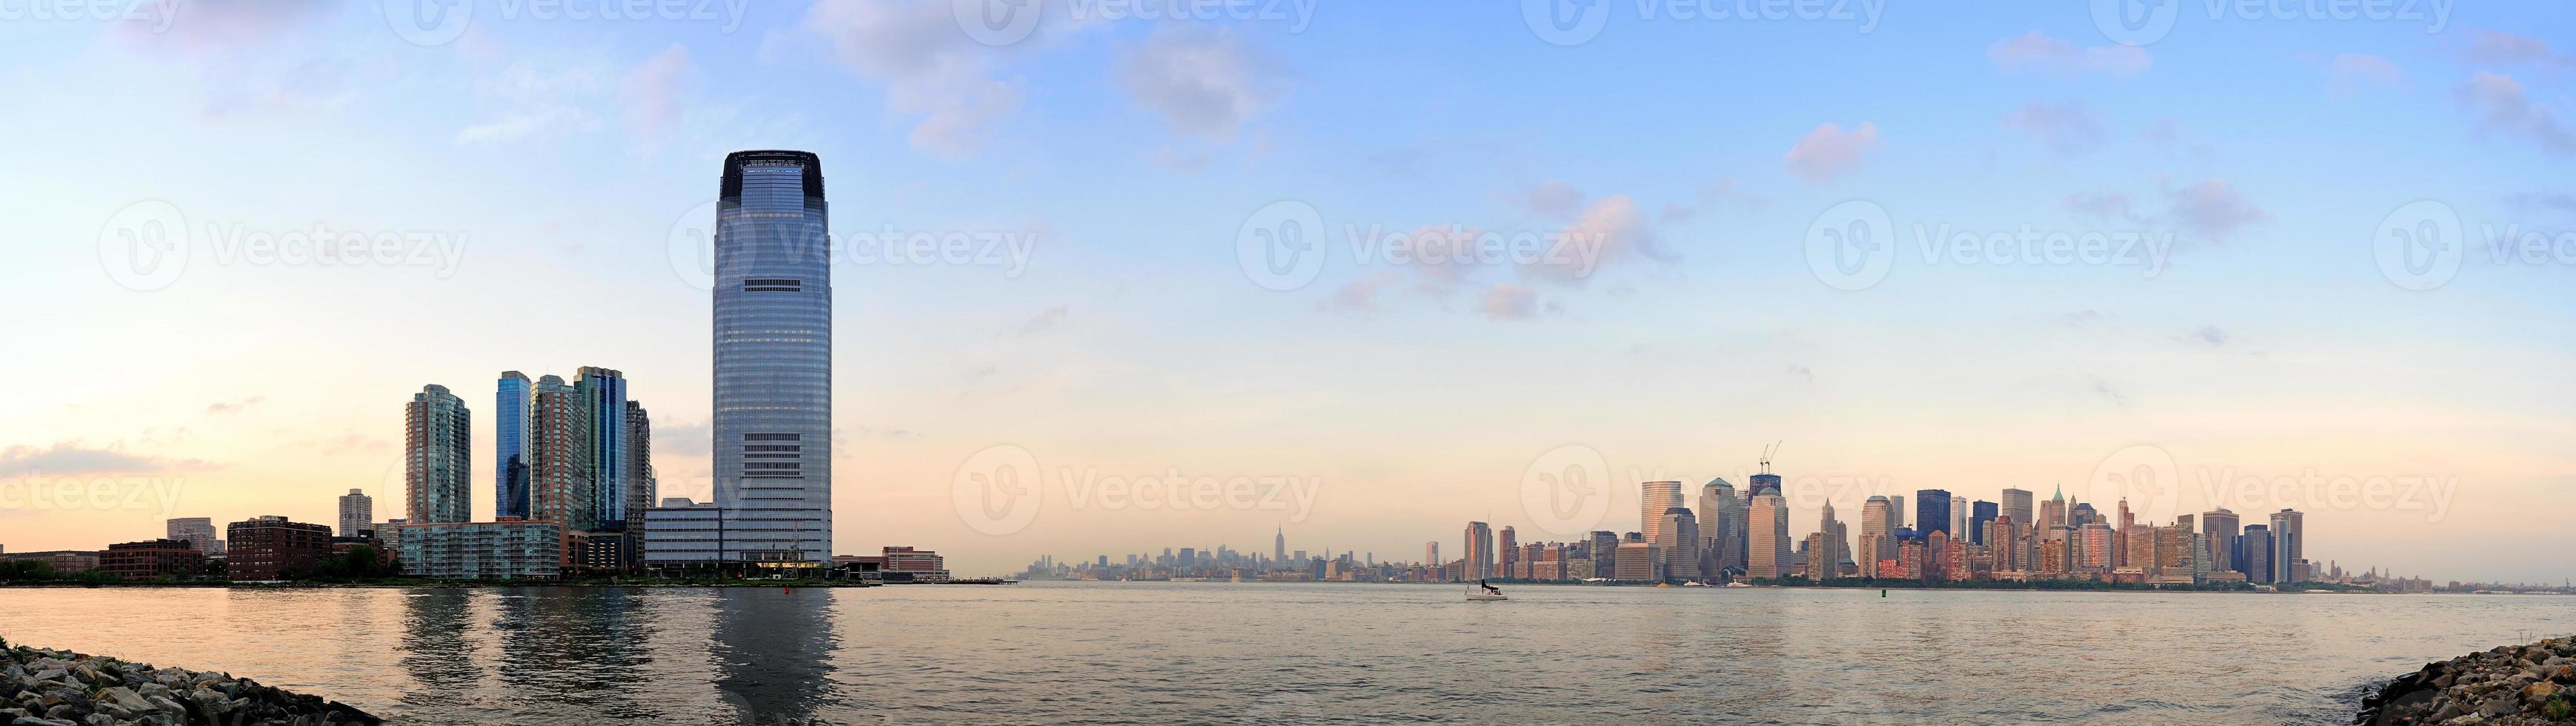 City skyline panorama photo